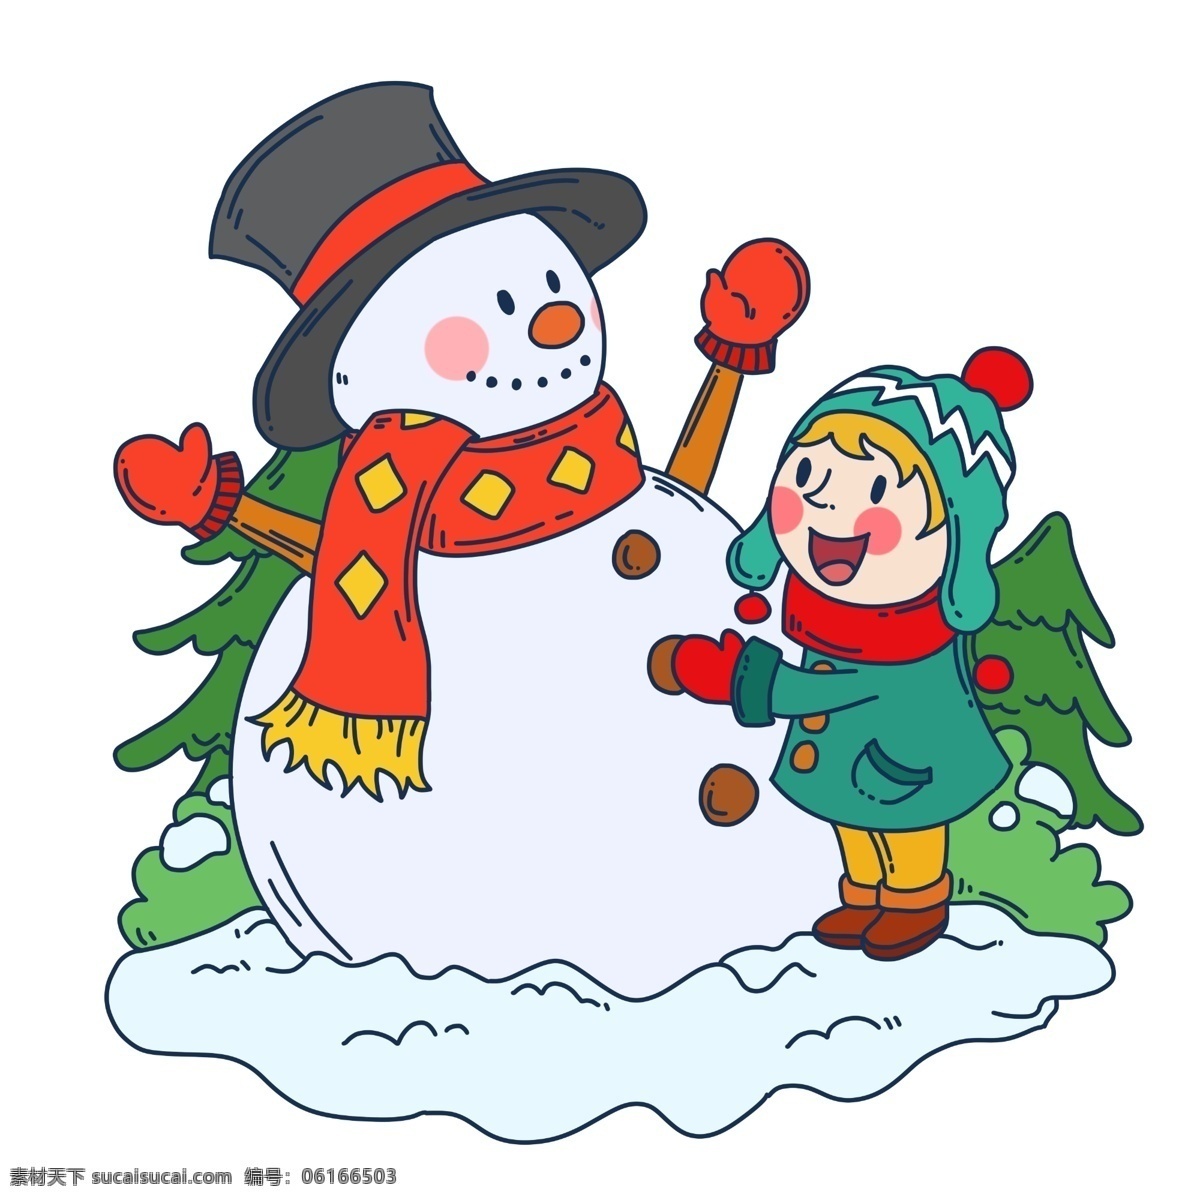 手绘 冬季 旅游 儿童 雪人 插画 手绘雪人 冬季旅游 儿童和雪人 可爱儿童 大雪人 快乐儿童 节日游乐 卡通人物插画